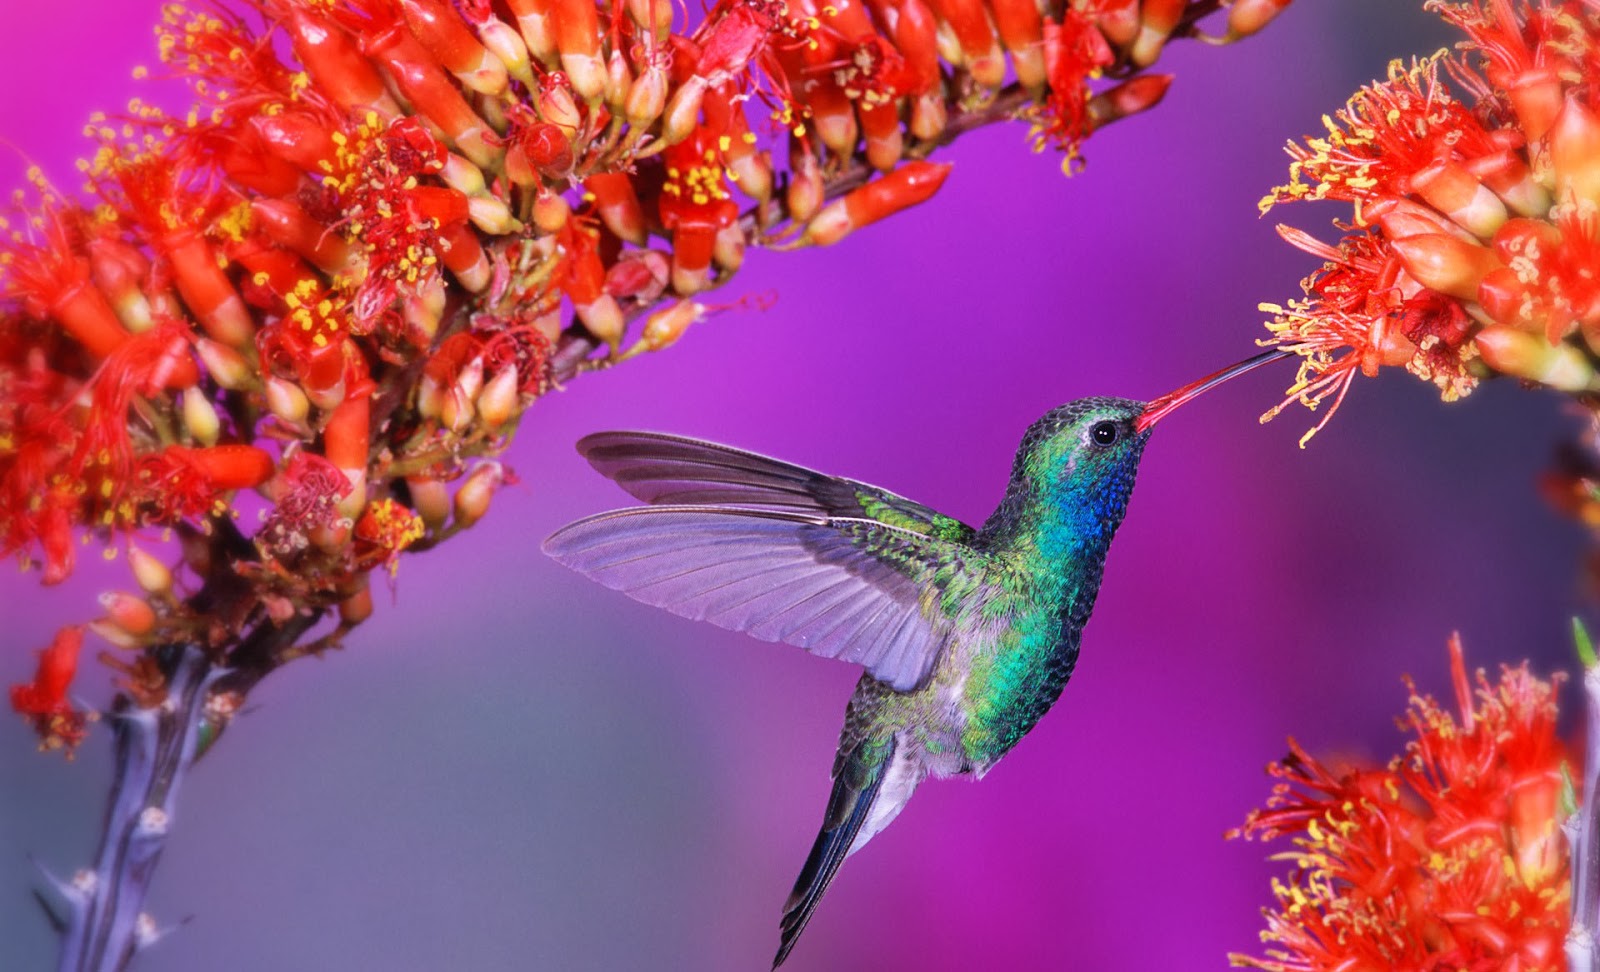 nuovi bellissimi sfondi,colibrì,uccello,pianta,rufous colibrì,fiore